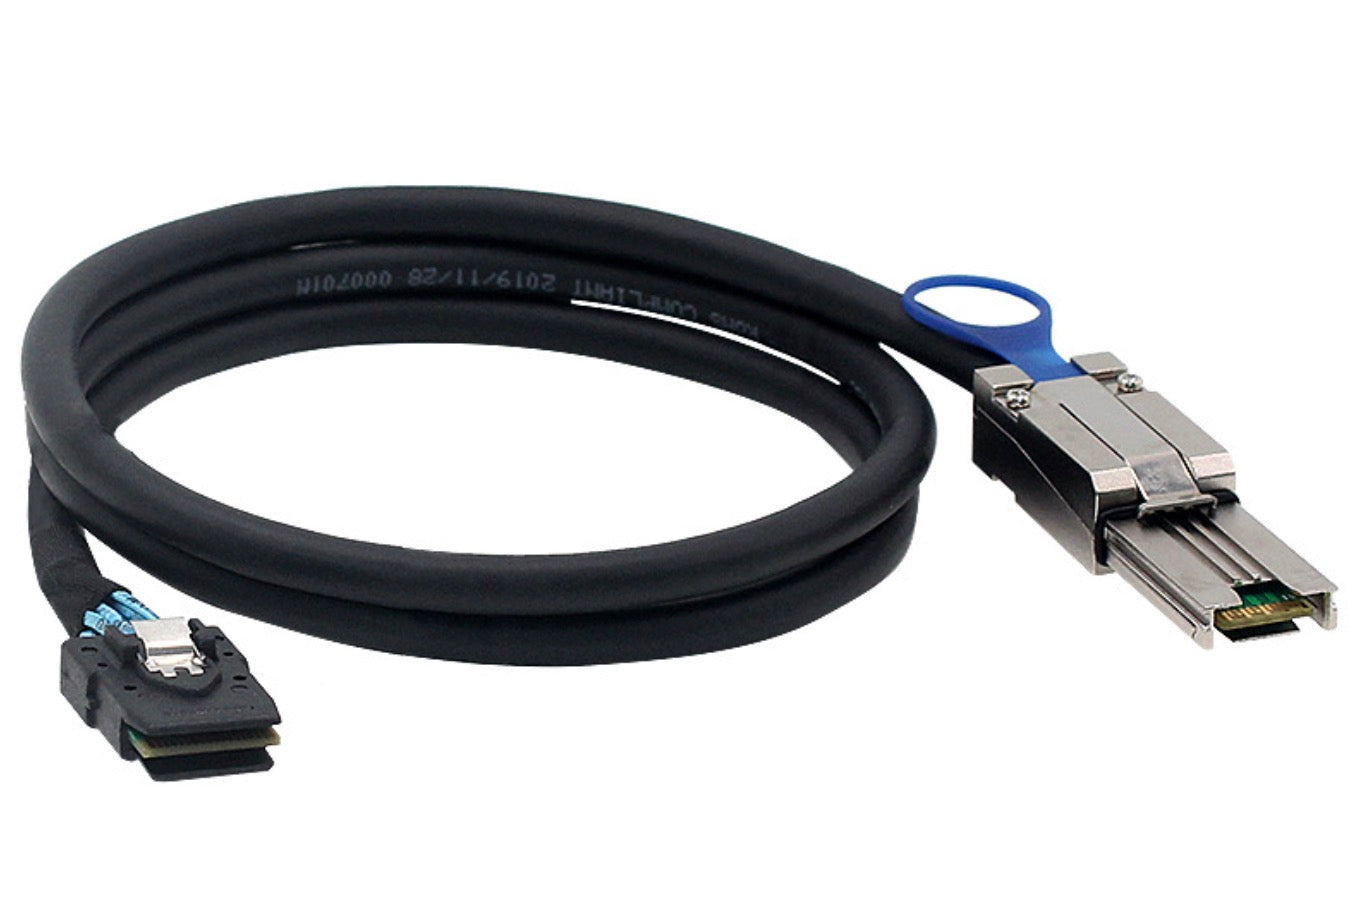 Mini SAS 26 Pin SFF-8088 to Mini SAS 36 Pin SFF-8087 External Data Cable 1m